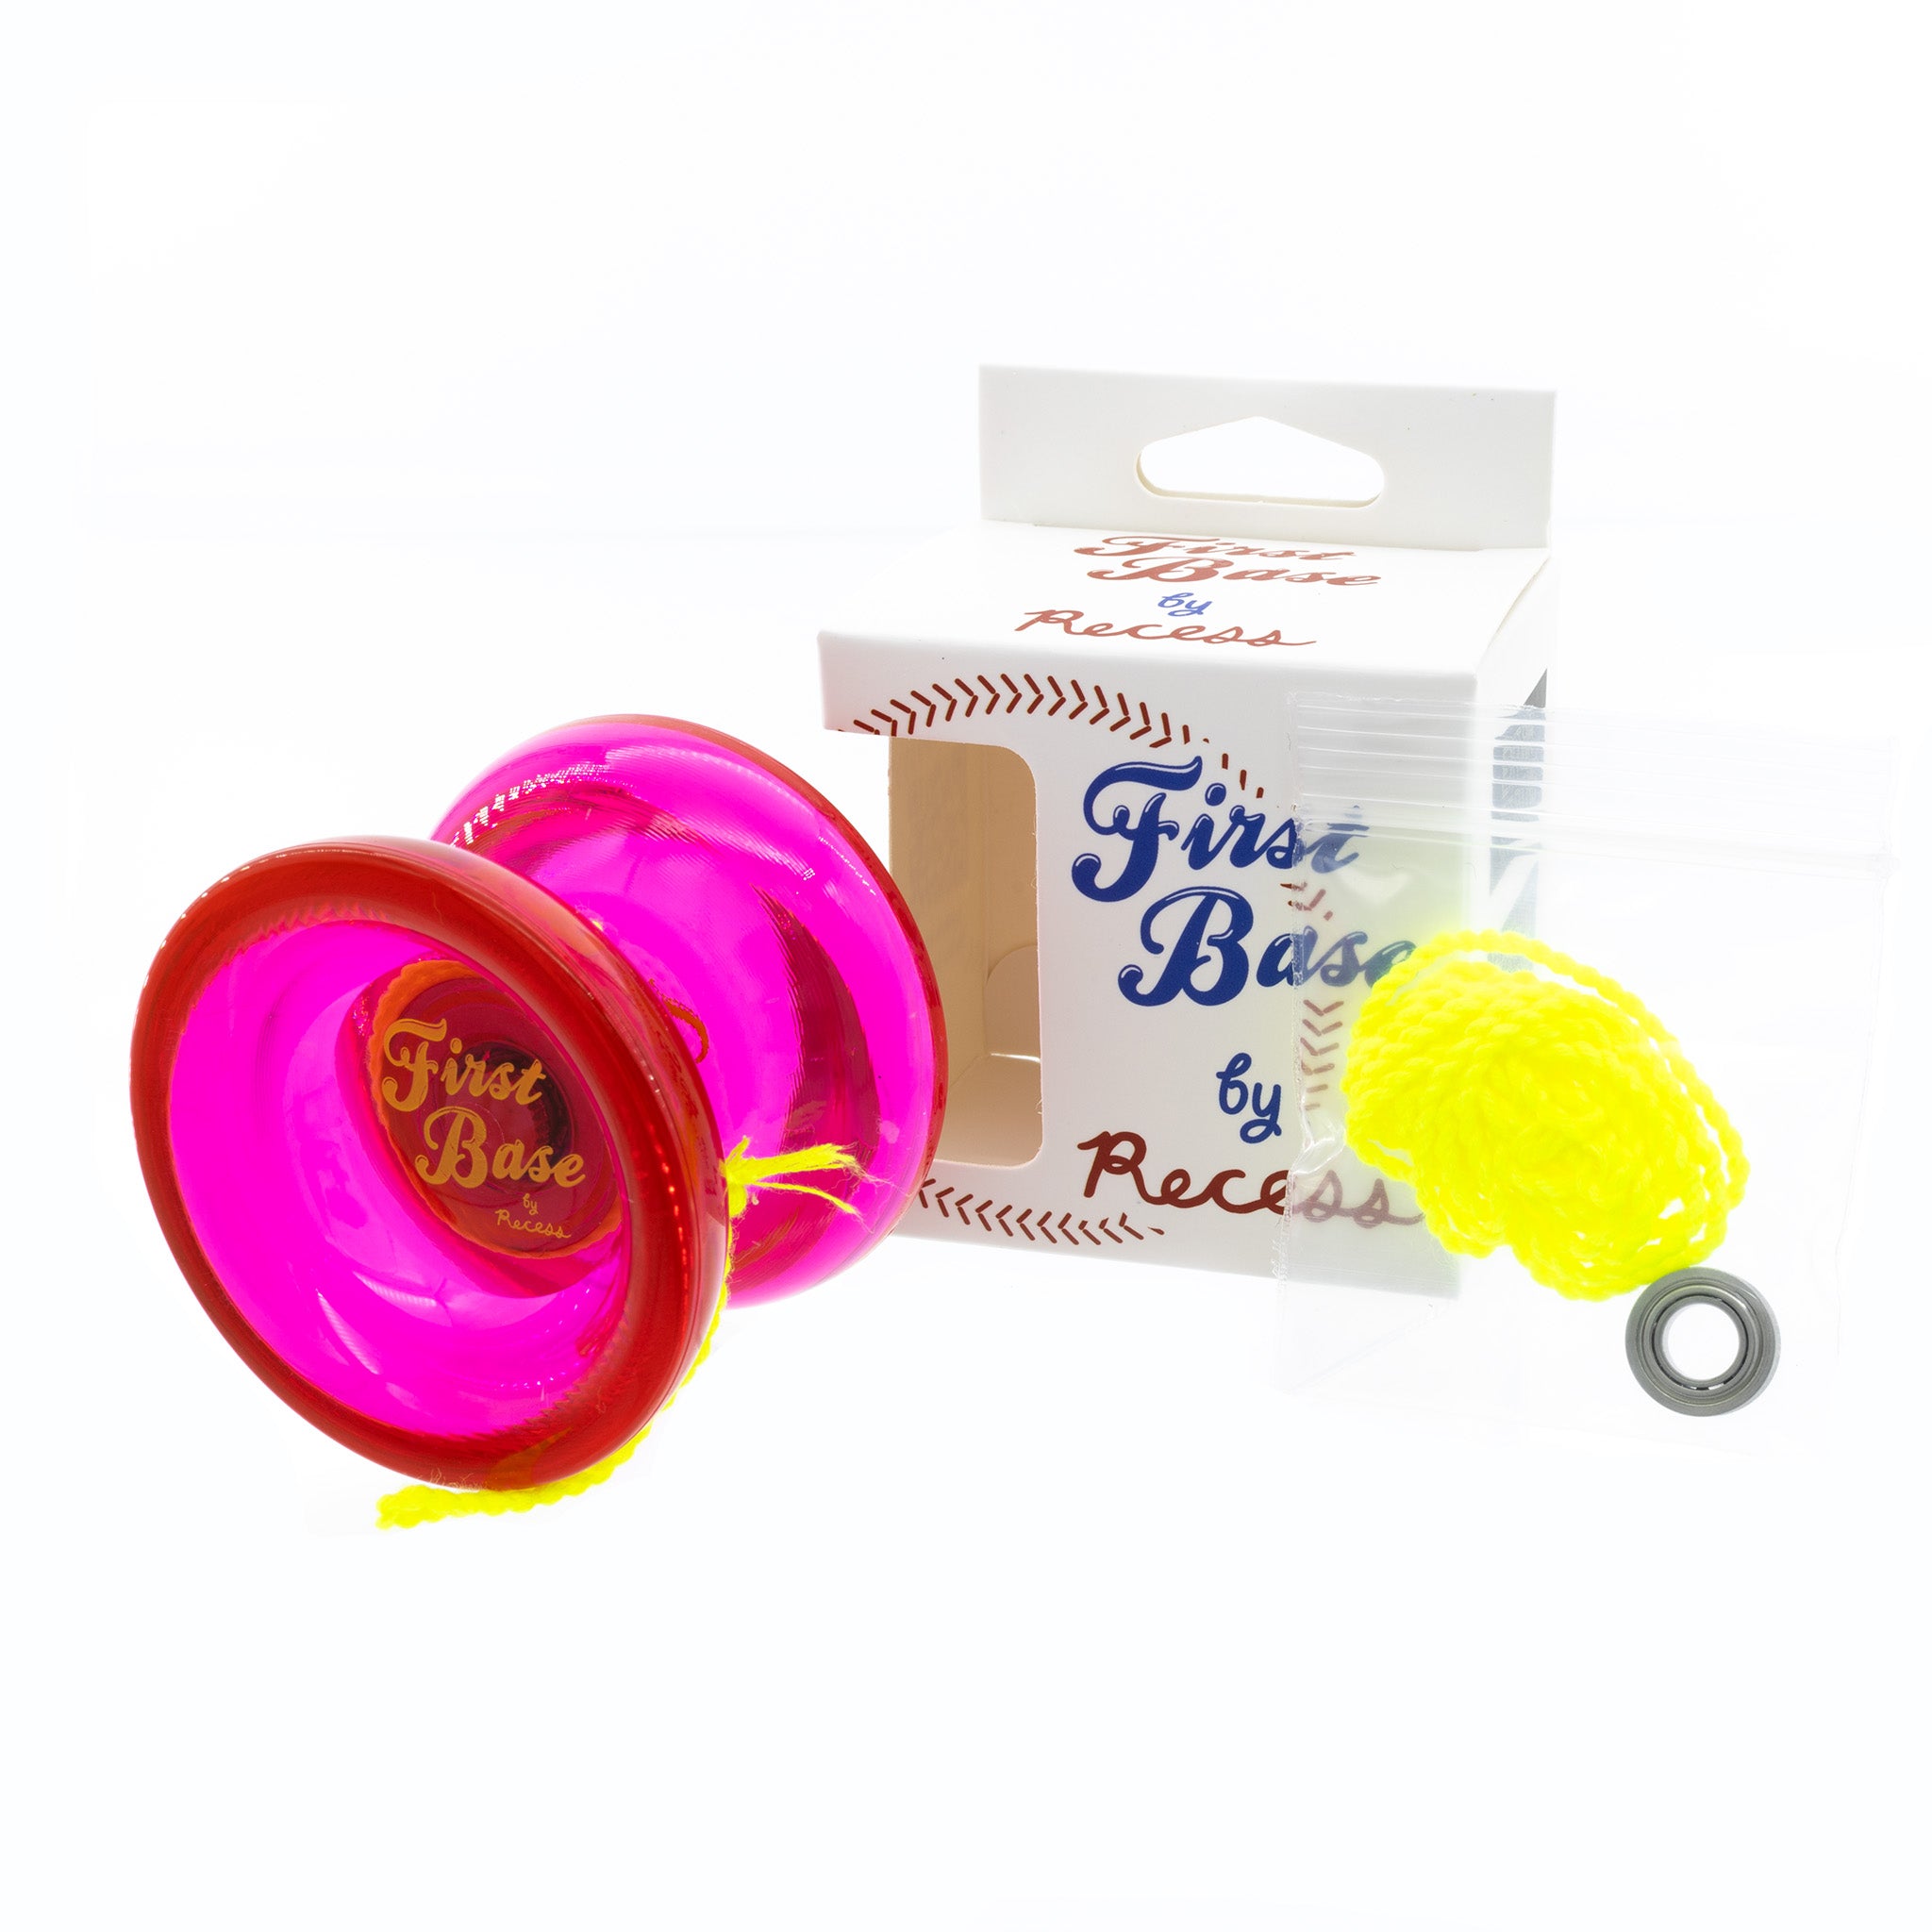 Recess First Base Yo-Yo – The Yo-Yo Shop